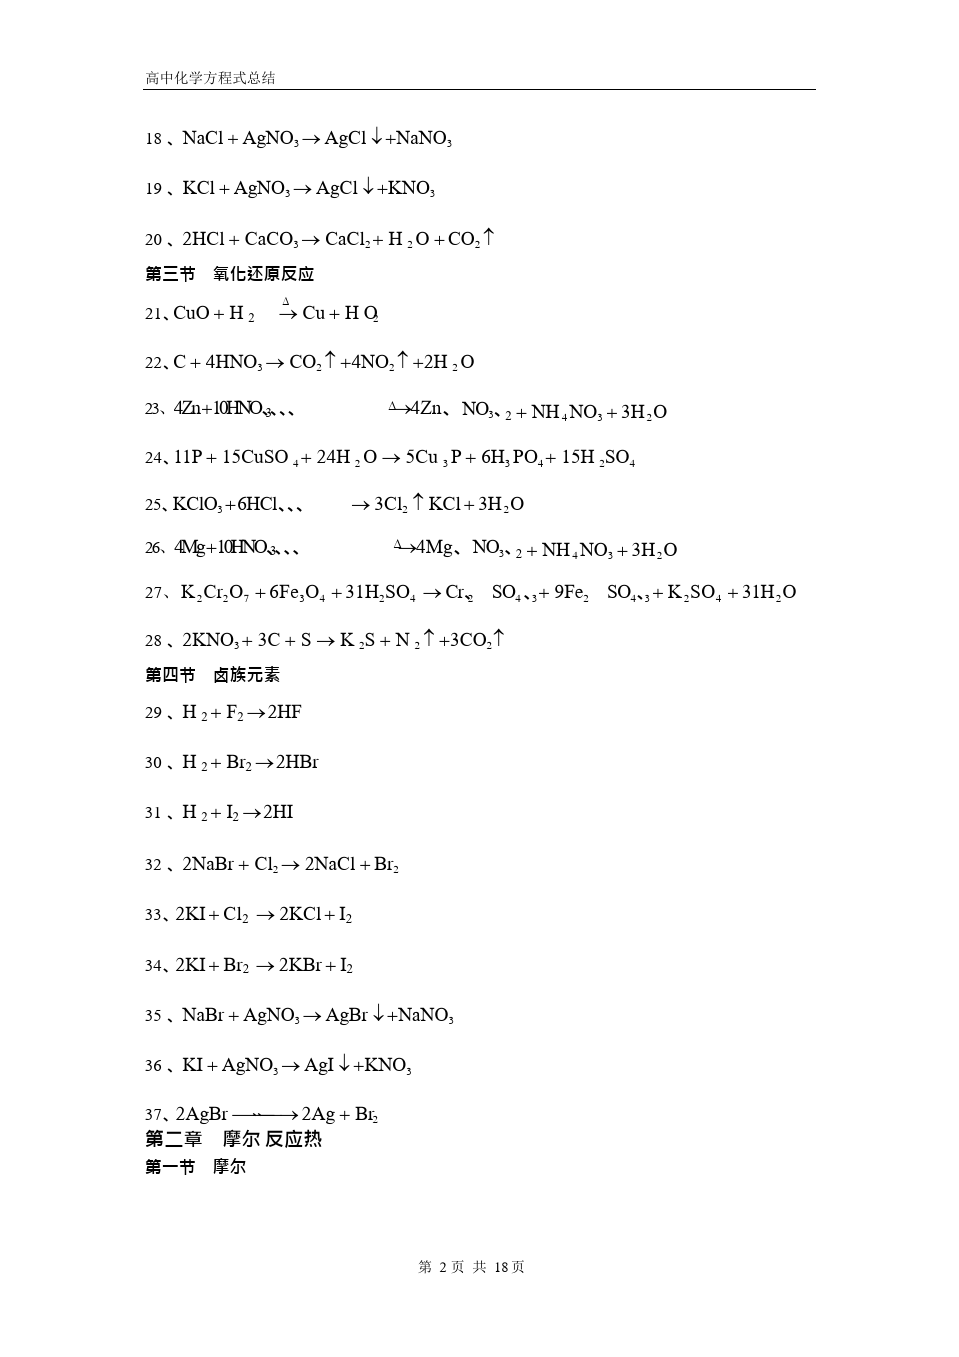 (完整版)高中化学方程式大全(绝对全)883KB,推荐文档